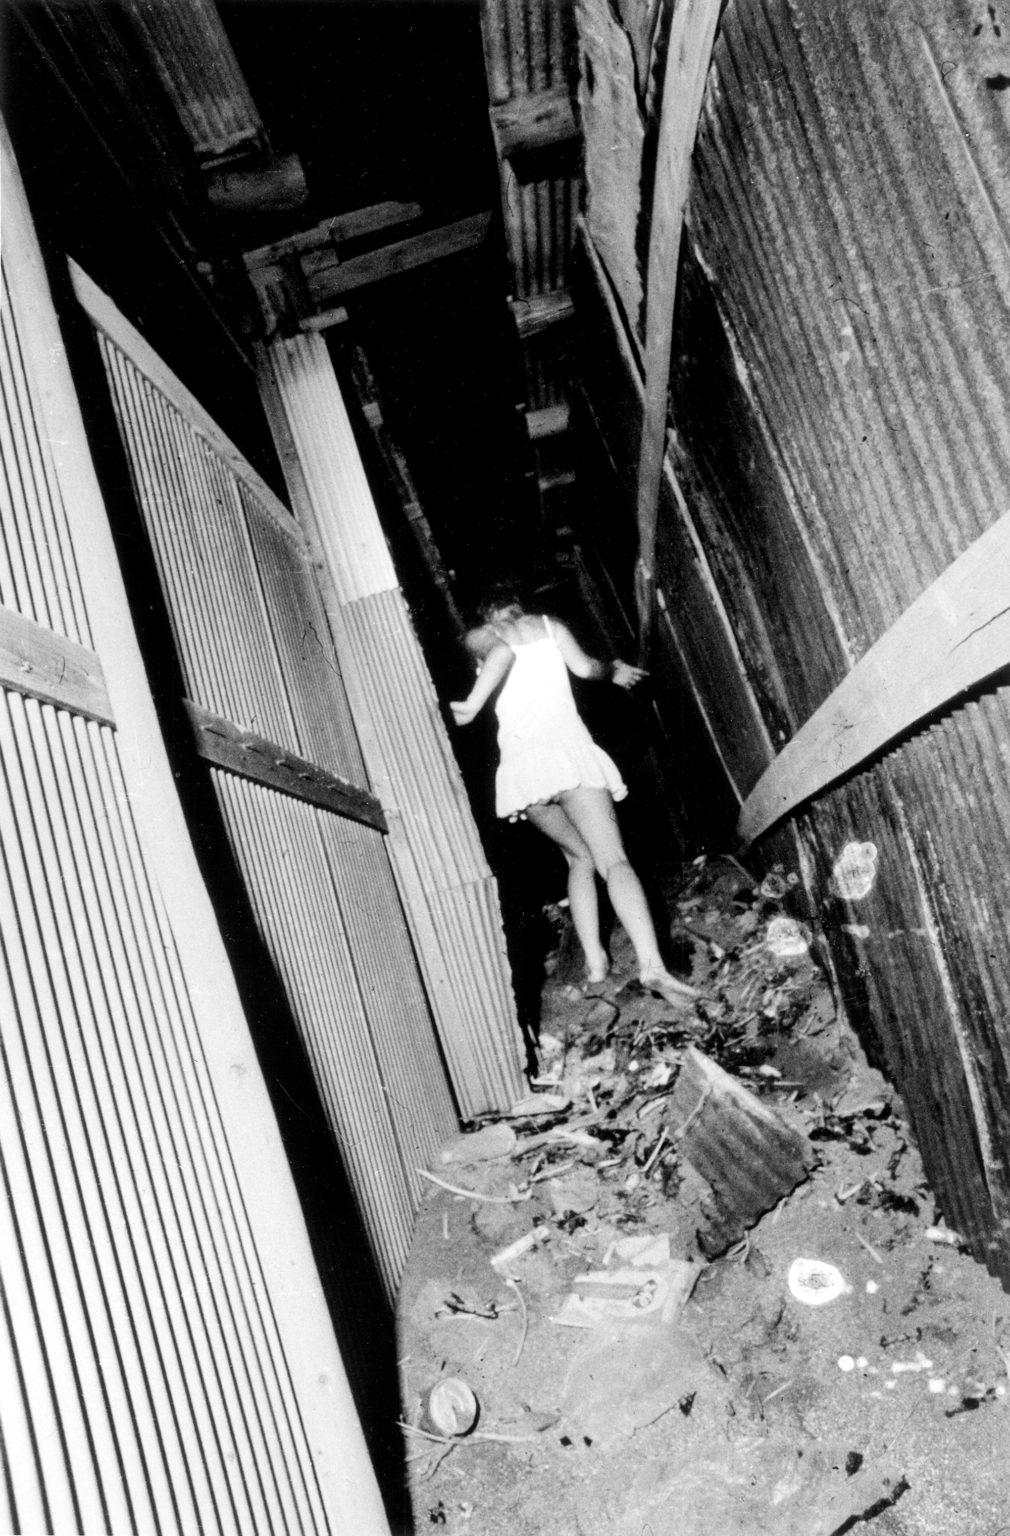 Photographie signée Daido Moriyama : Yokosuka, une ville japonaise 1971/2020 :

Une représentation granuleuse, en noir et blanc et très contrastée, signée Daido Moriyama, d'une jeune fille anonyme en robe blanche courant dans une ruelle pleine de